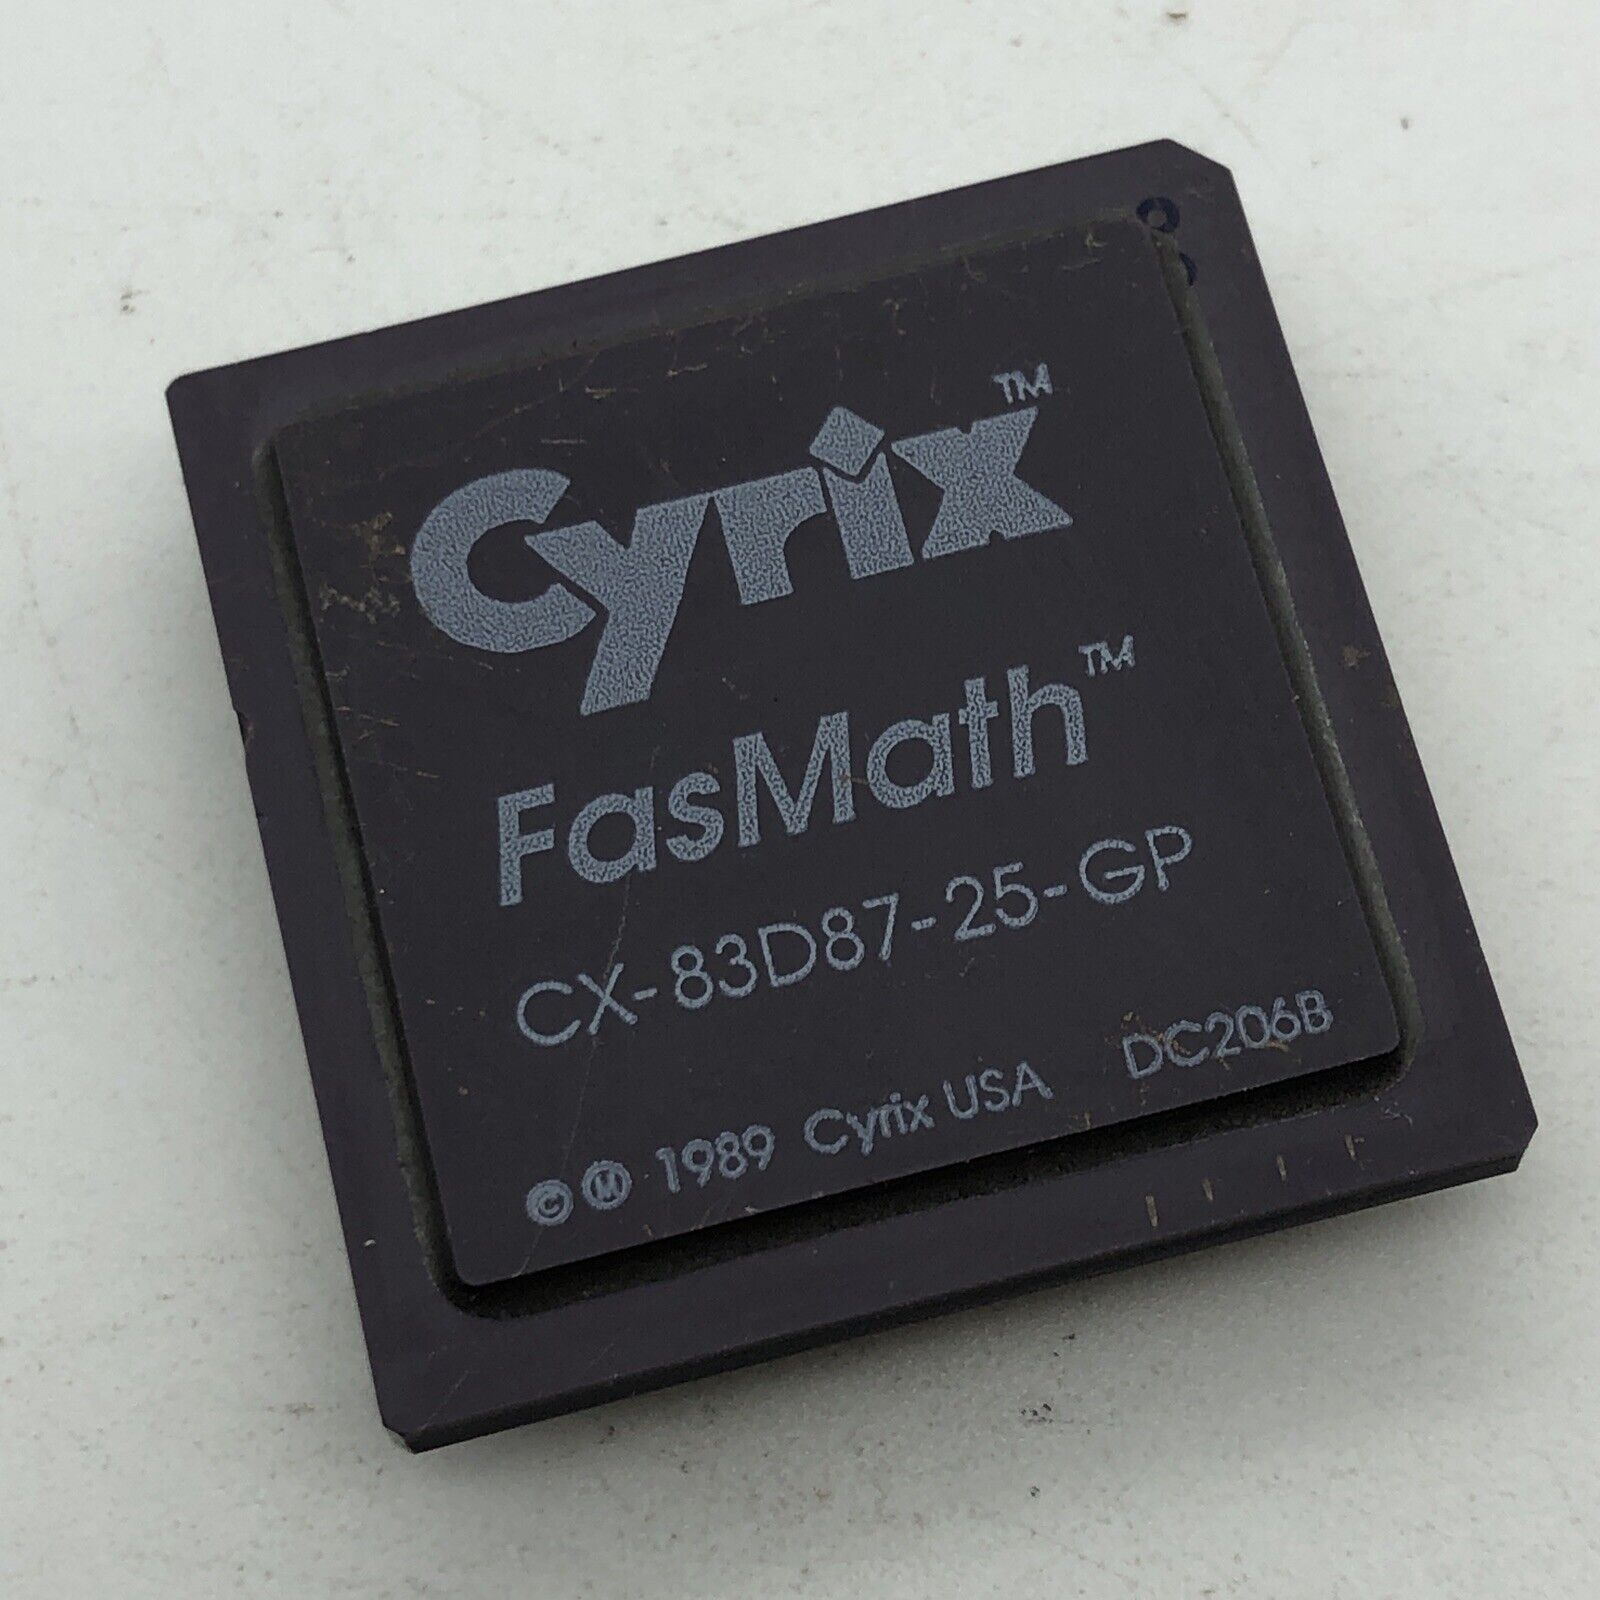 Cyrix CX-83D87-25-GP FASMATH FPU for 386DX CPU 25MHz CPGA68 CX83D87 Math-Co 1989